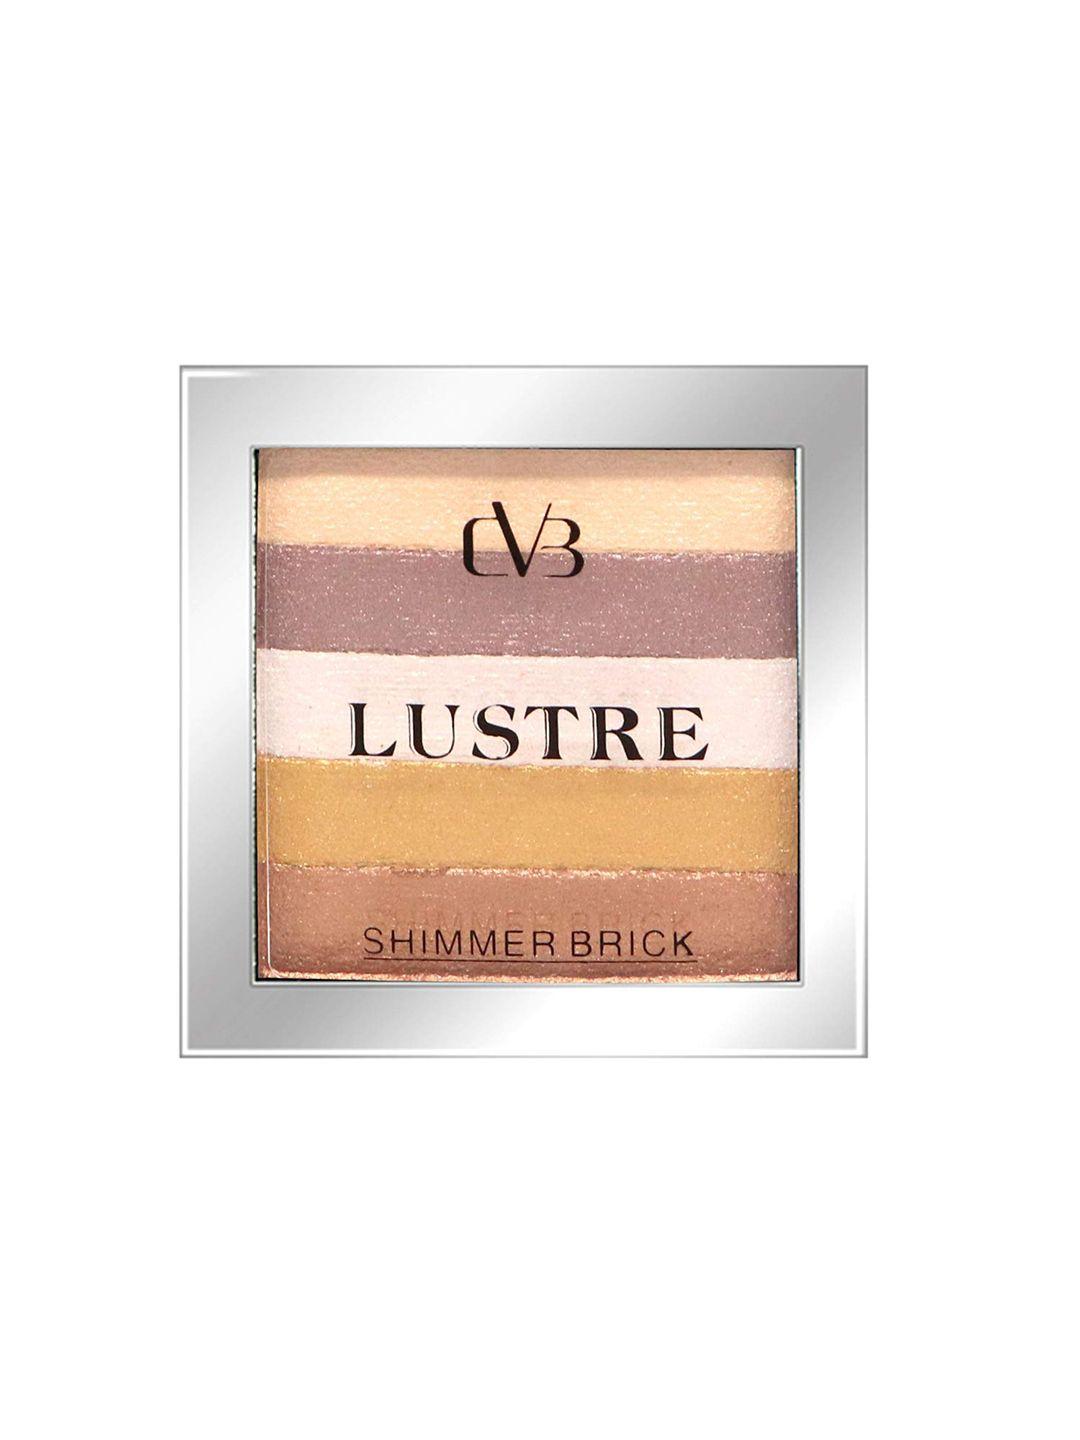 cvb lustre shimmer brick blush - shade c35-05